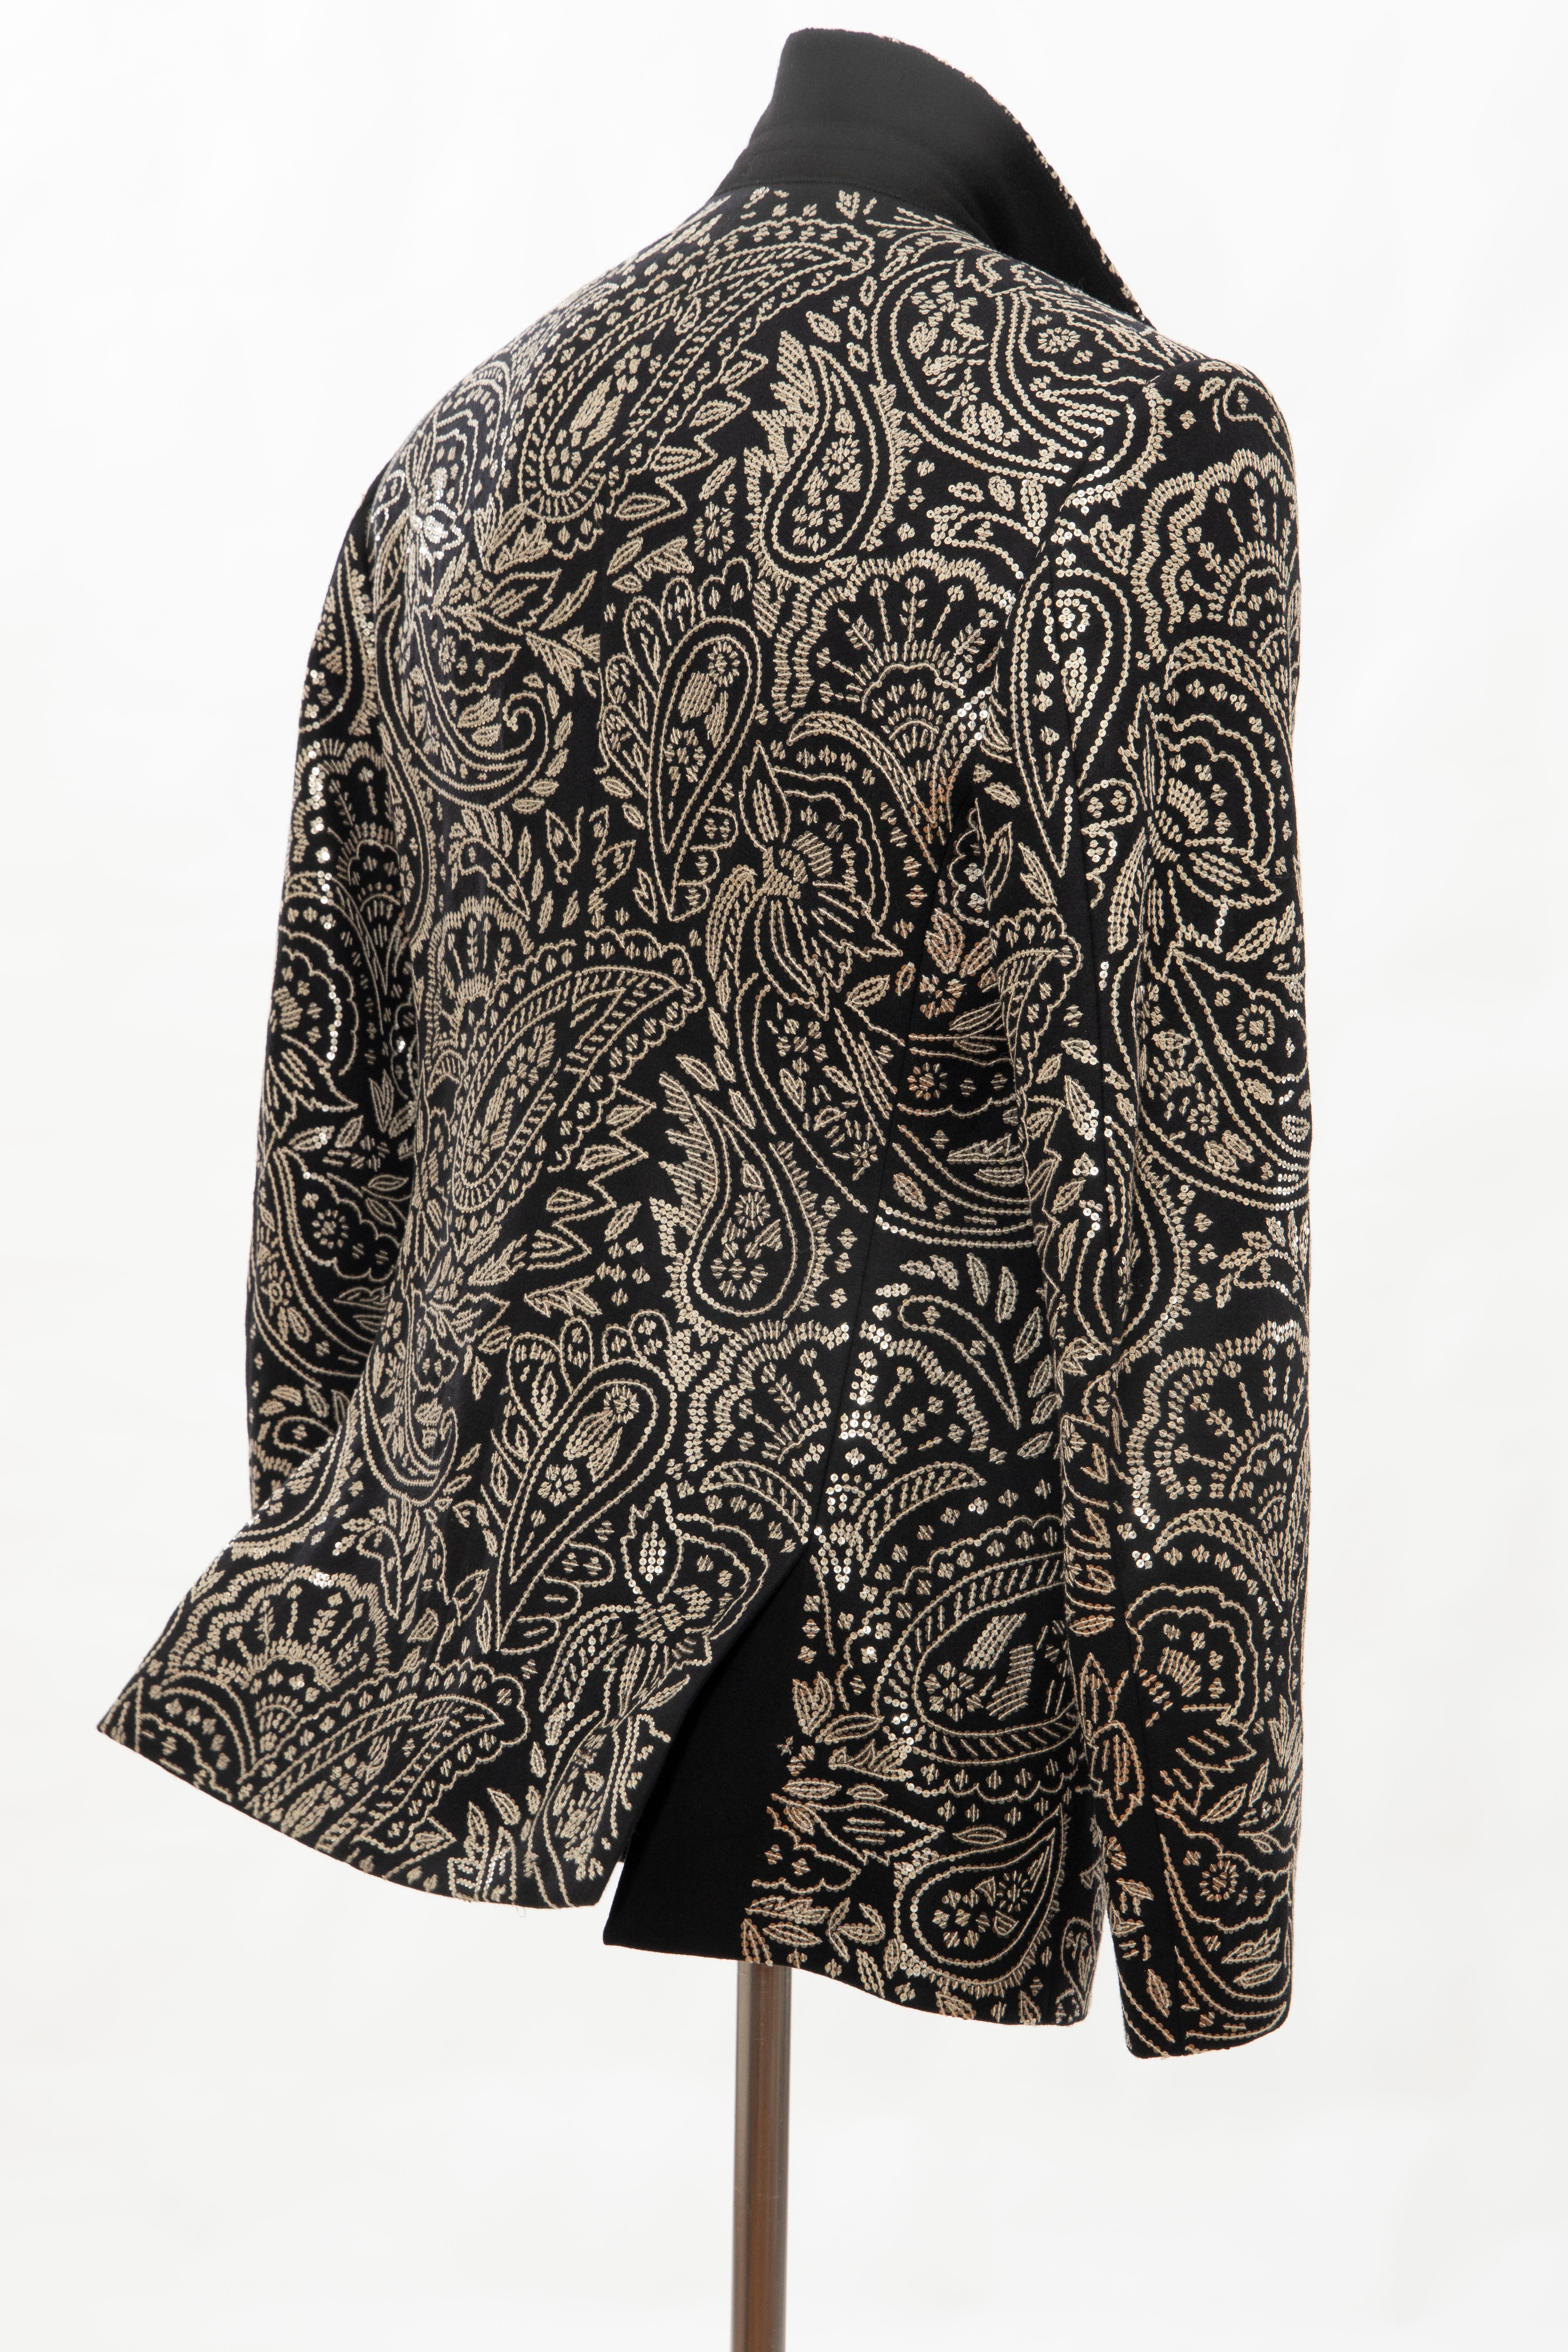 Alexander McQueen Men's Runway Black Wool Embroidered Sequin Blazer, Fall 2016 8